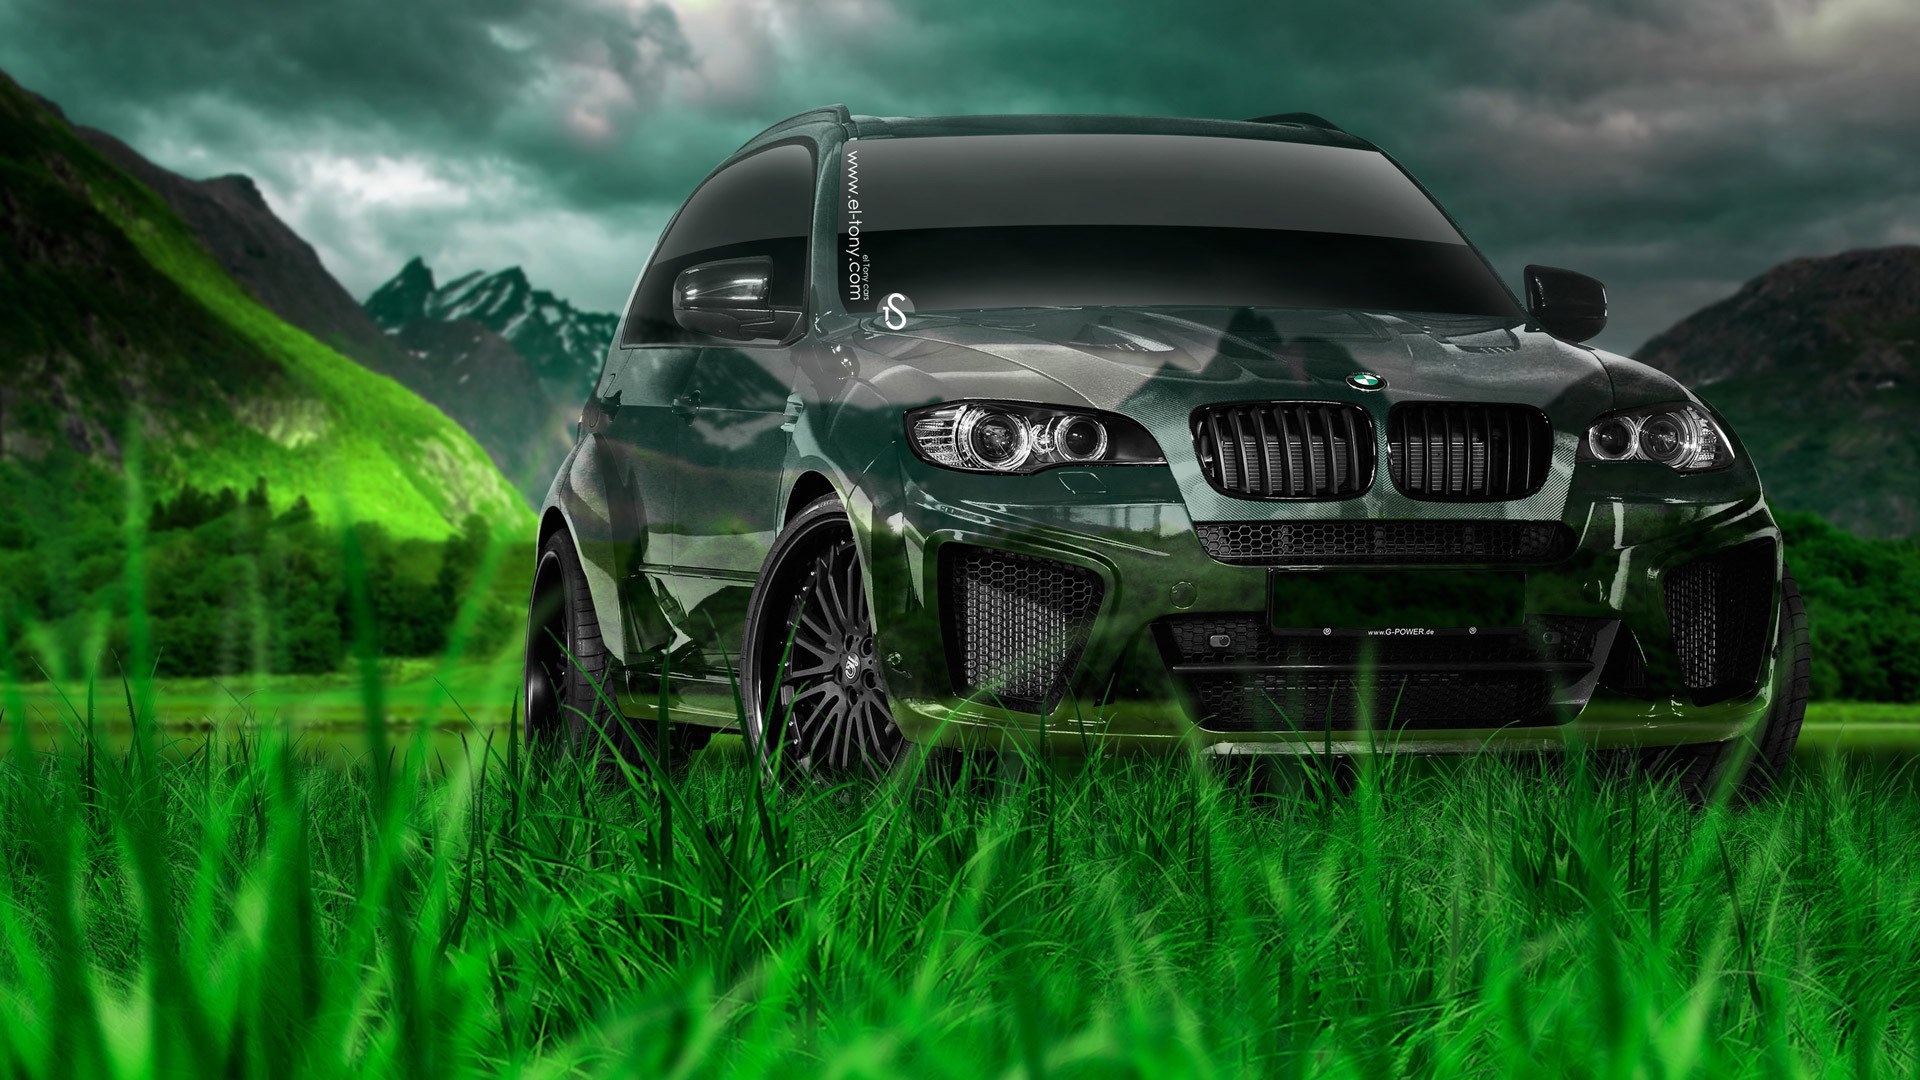 Bmw x5 топливо. BMW x5 зеленый. БМВ х5 хамелеон. Зеленая БМВ x5. BMW x5 rasmi.